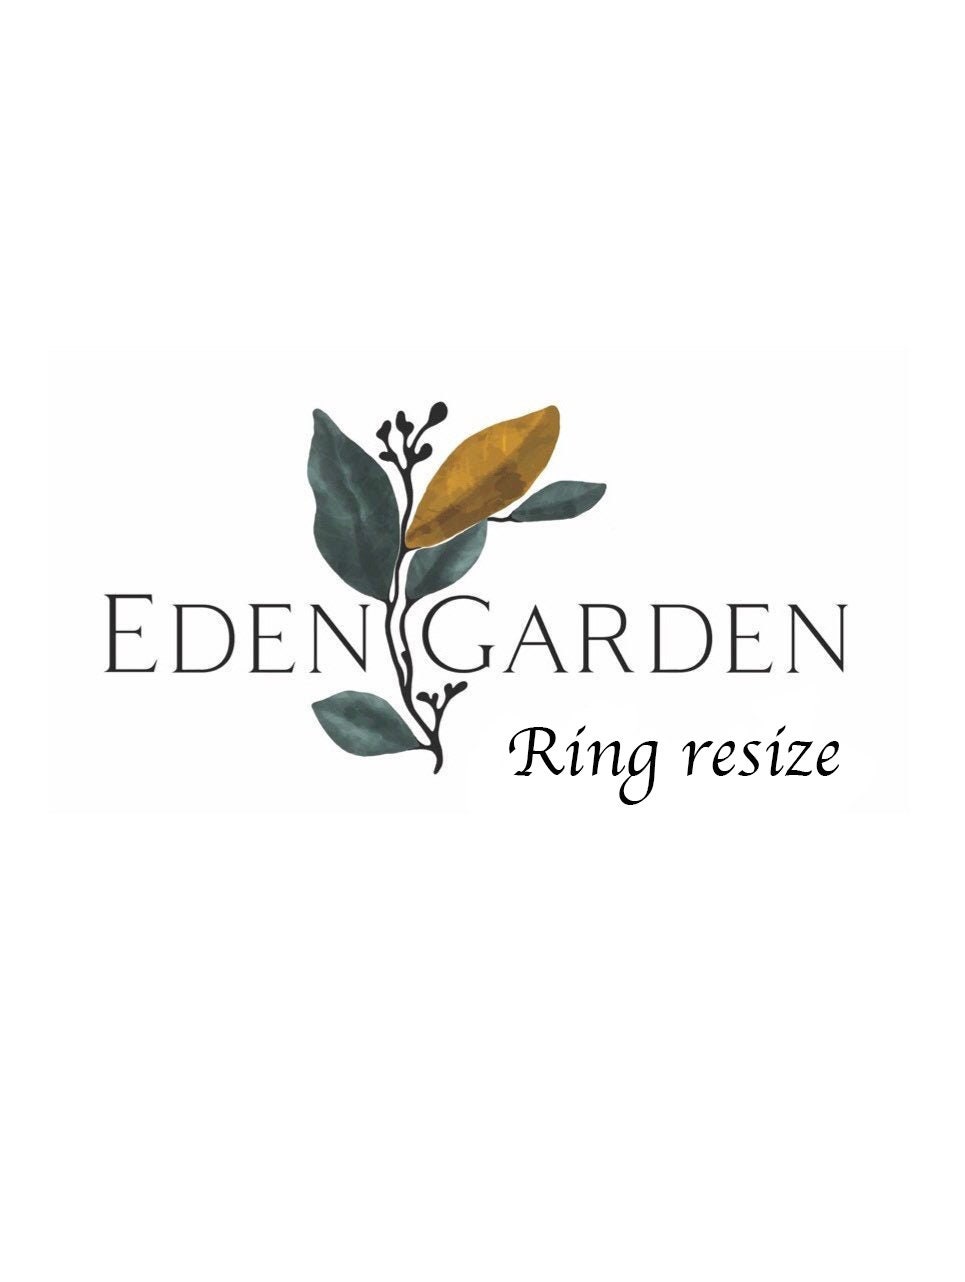 Edens Garden, Natural Bar Soap: Review